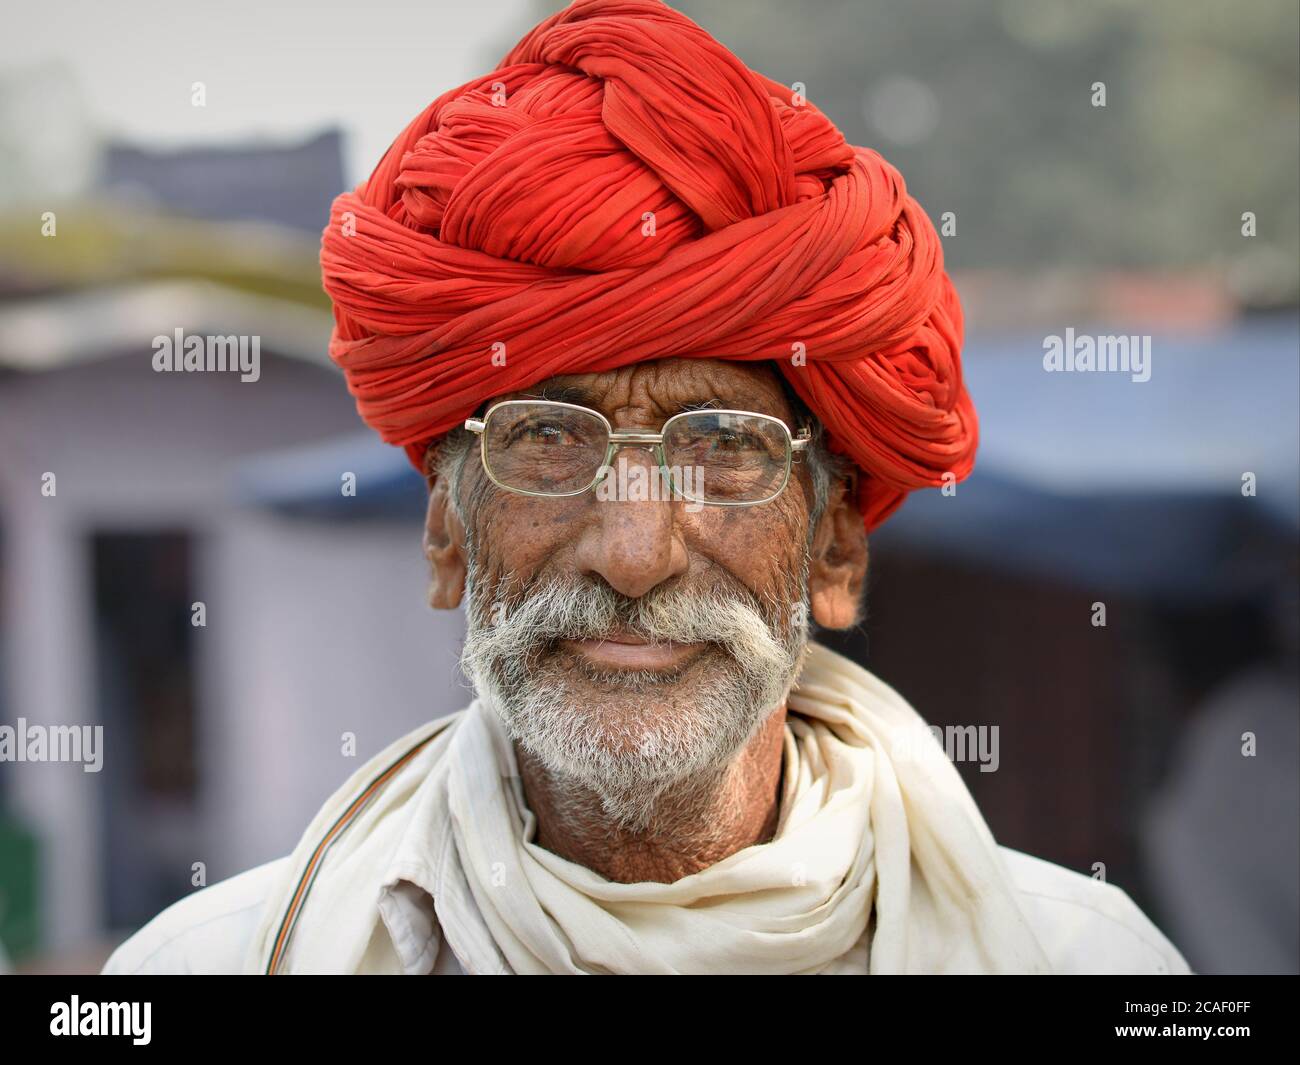 Indian Rajasthani man with eyeglasses and red turban (pagari, pagdi, paghdi, pagri) looks at the camera. Stock Photo